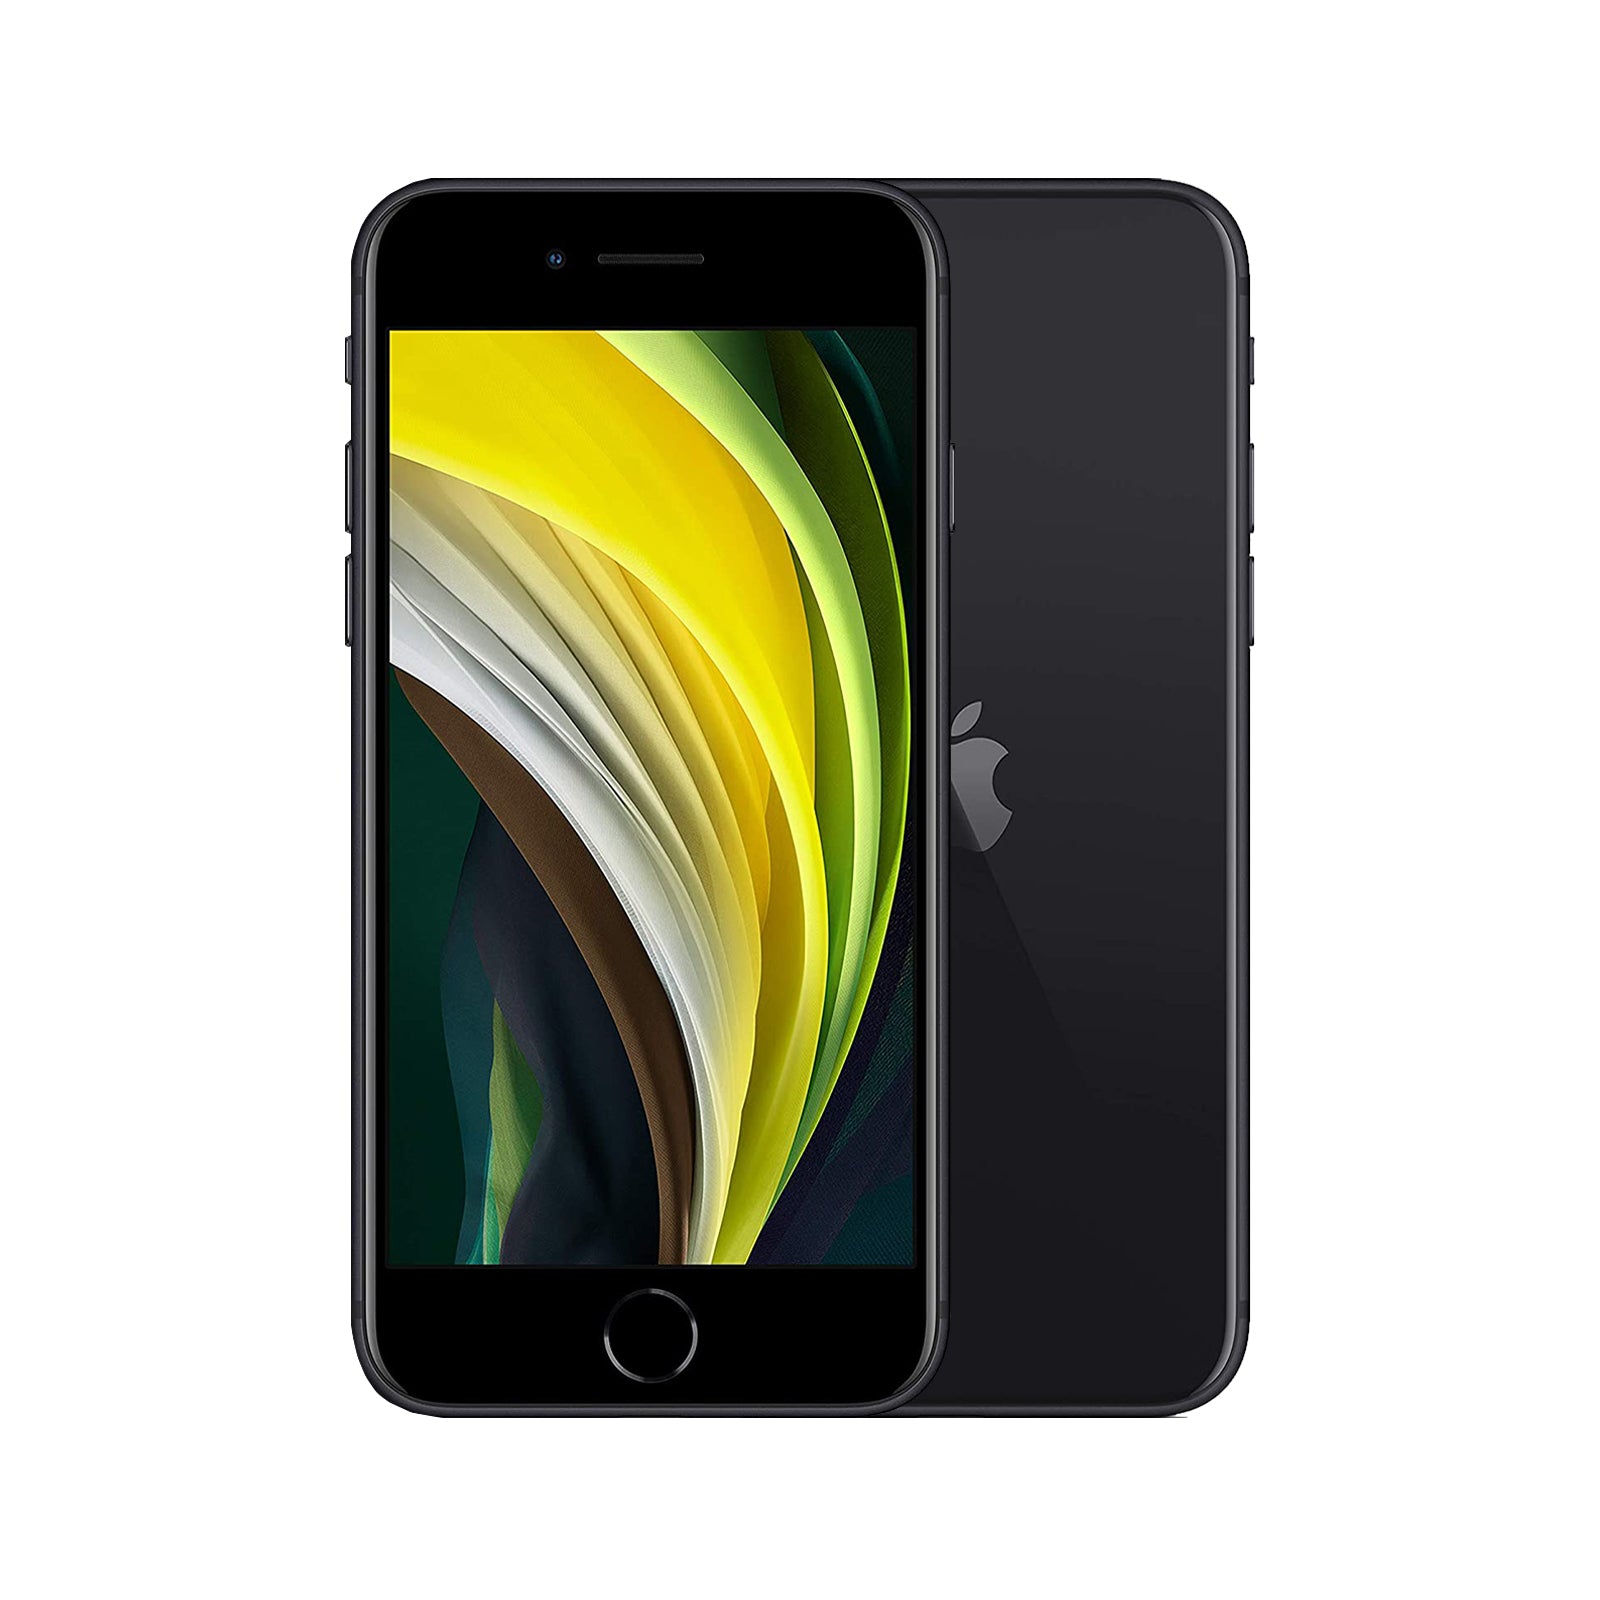 Apple iPhone SE (2020) 64GB Black - Excellent - Refurbished